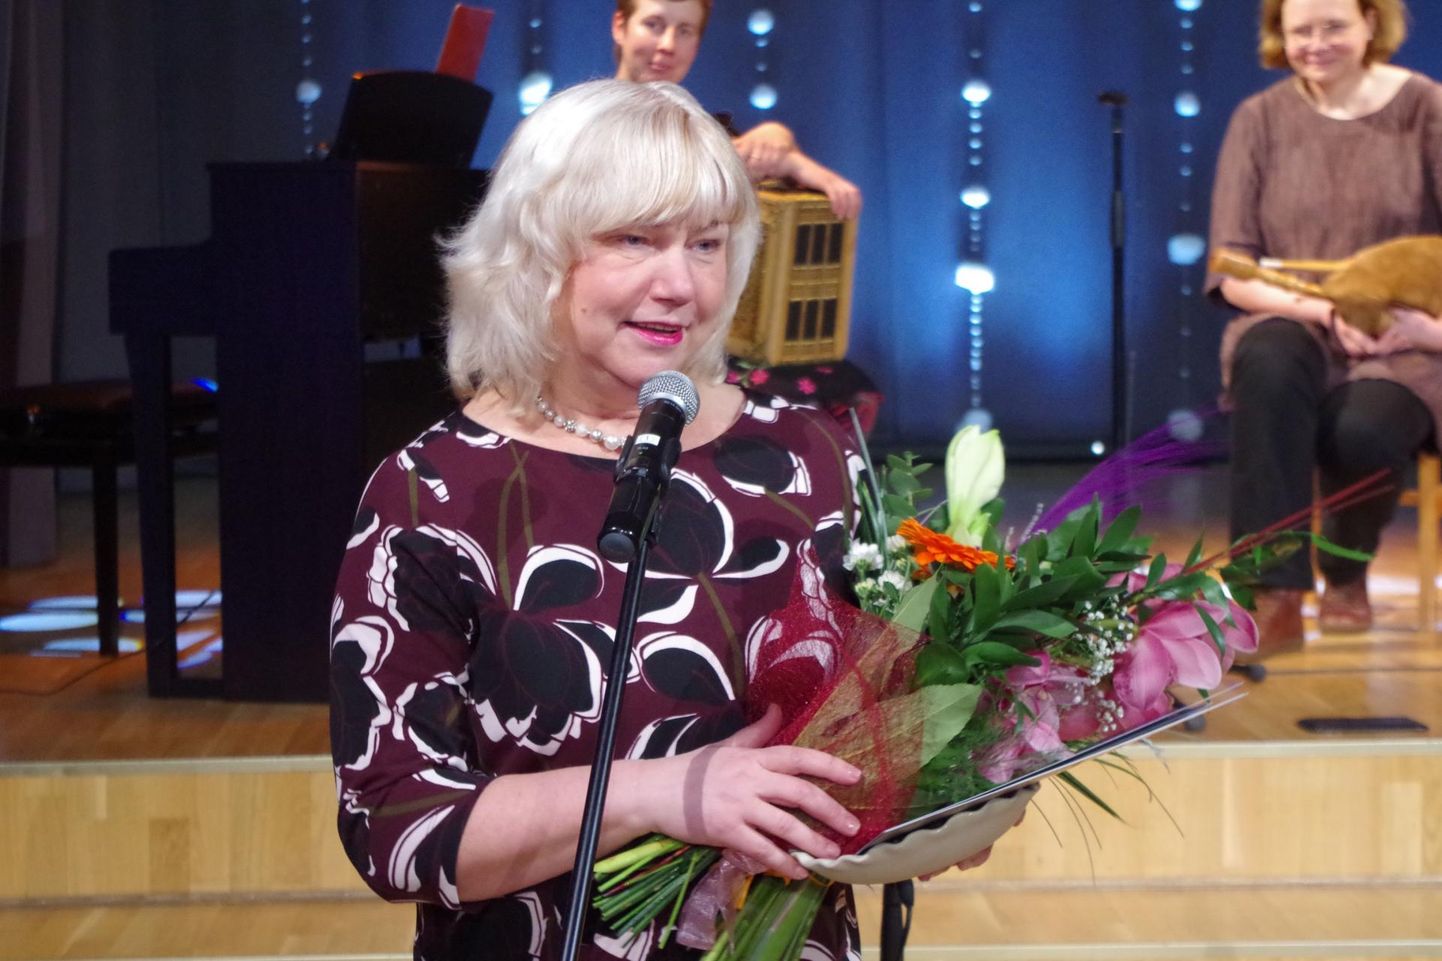 Kultuurkapitali Võrumaa ekpertgrupi aastapreemiate galal kuulutati Kultuuripärliks helilooja ja koolijuht Piret Rips-Laul. 